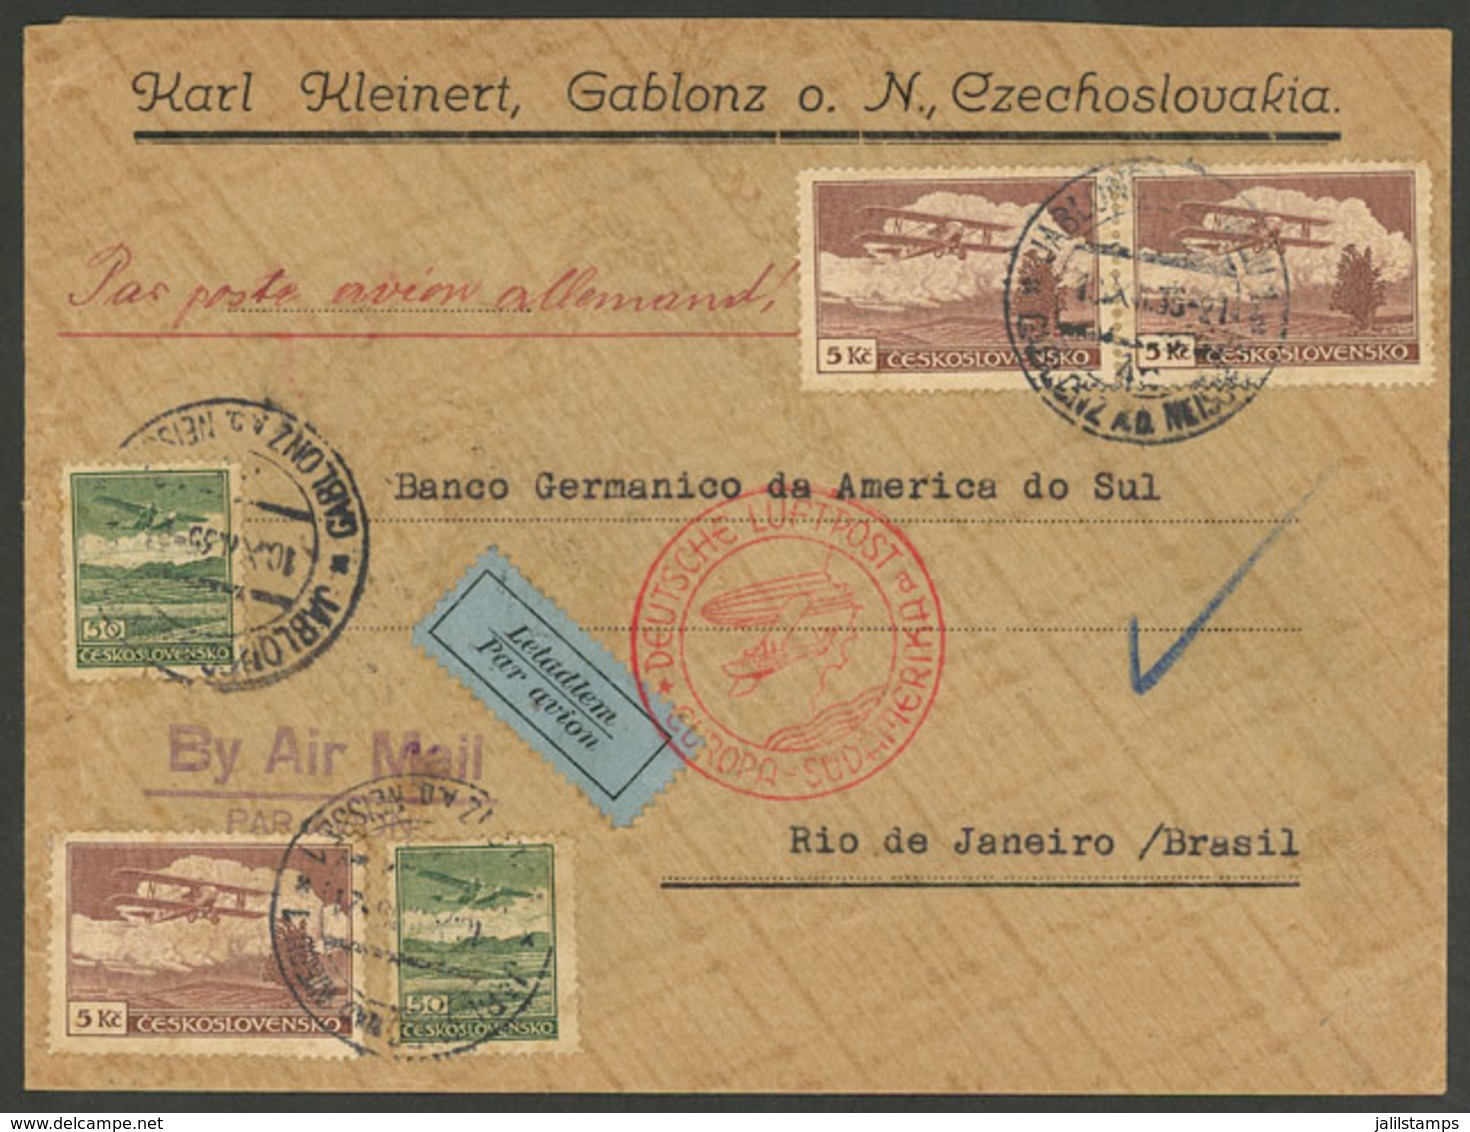 CZECHOSLOVAKIA: 10/DE/1935 Gablonz - Rio De Janeiro: Airmail Cover With Nice Postage, Sent Via Germany (DLH), VF Quality - Storia Postale